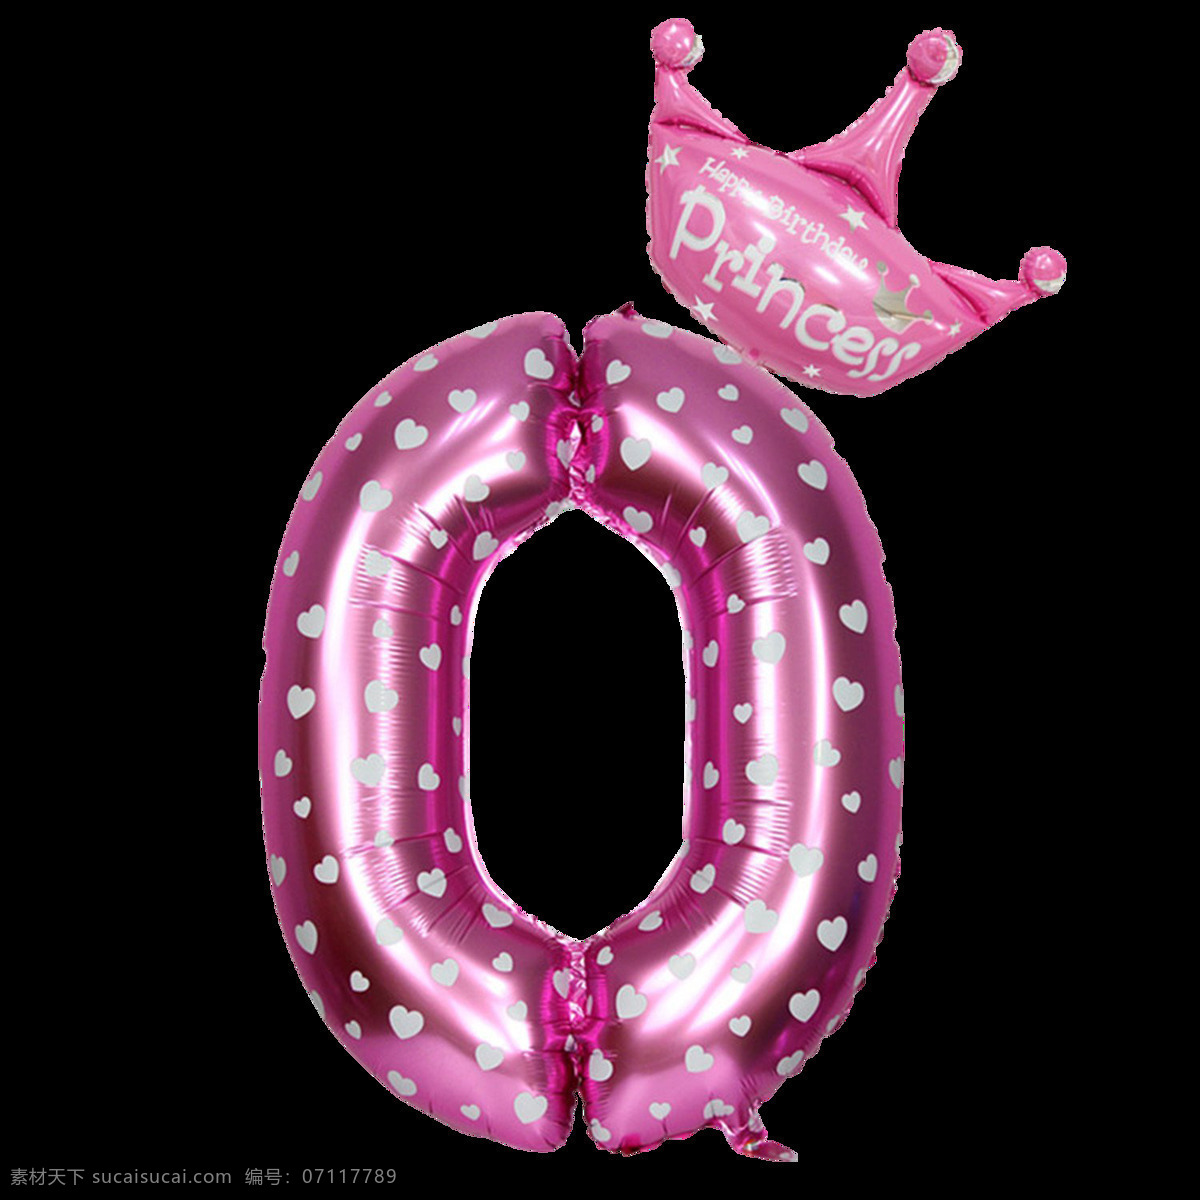 粉色气球字0 粉色气球字 王冠气球字 气球字 气球数字 铝膜气球字母 装饰字 派对气球 气球文字 字母气球 铝箔气球 3d设计 3d作品